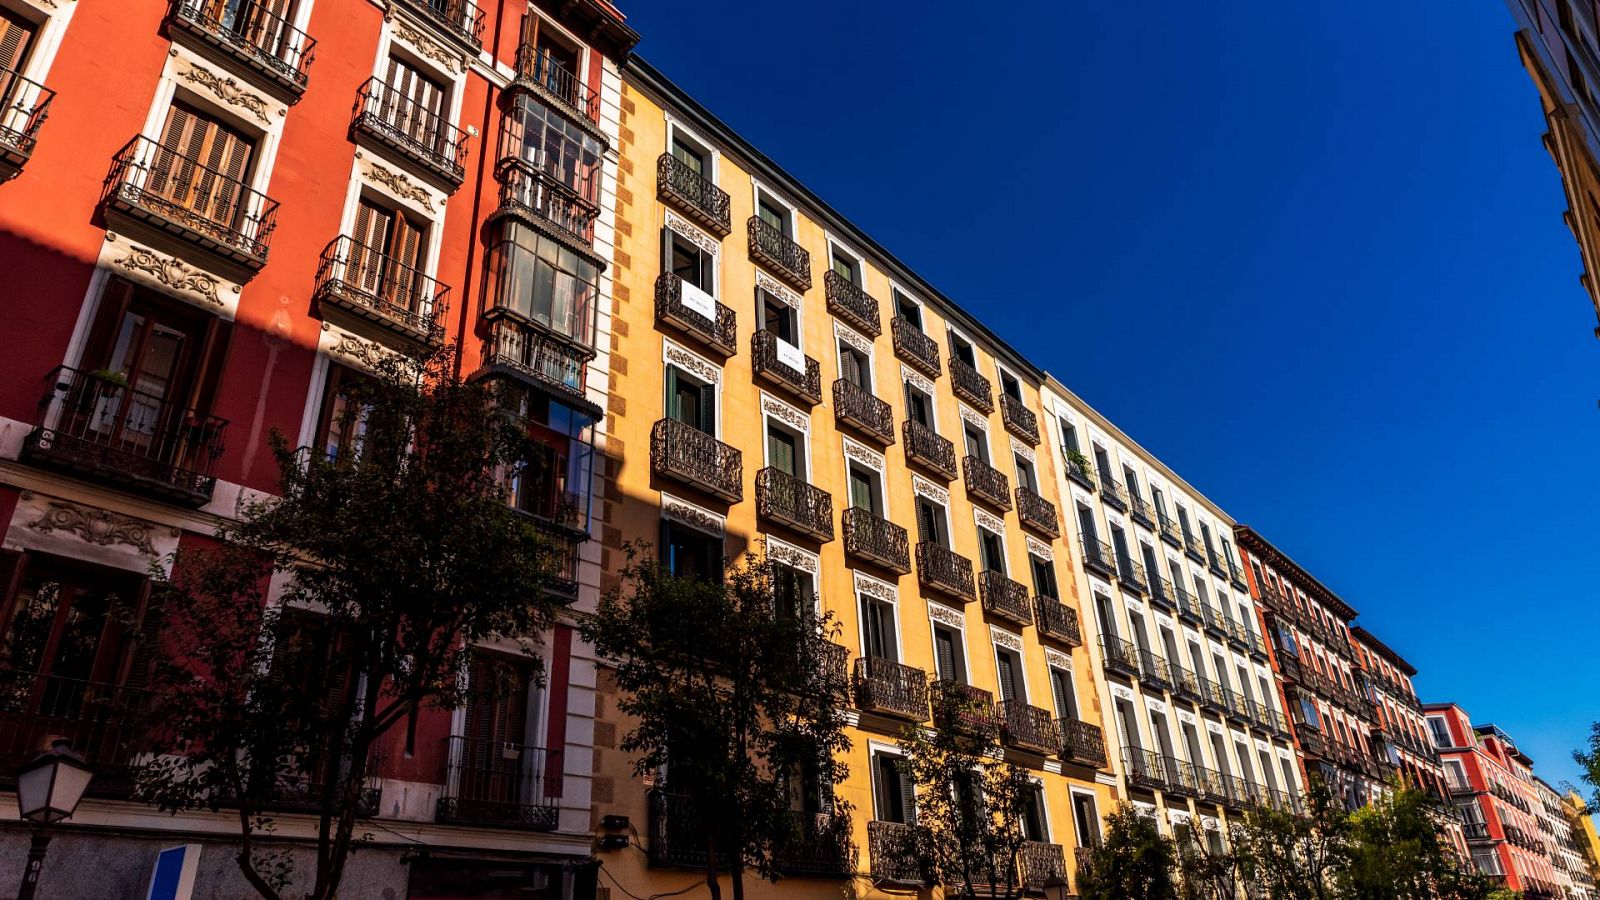 Edificios en una calle de Madrid